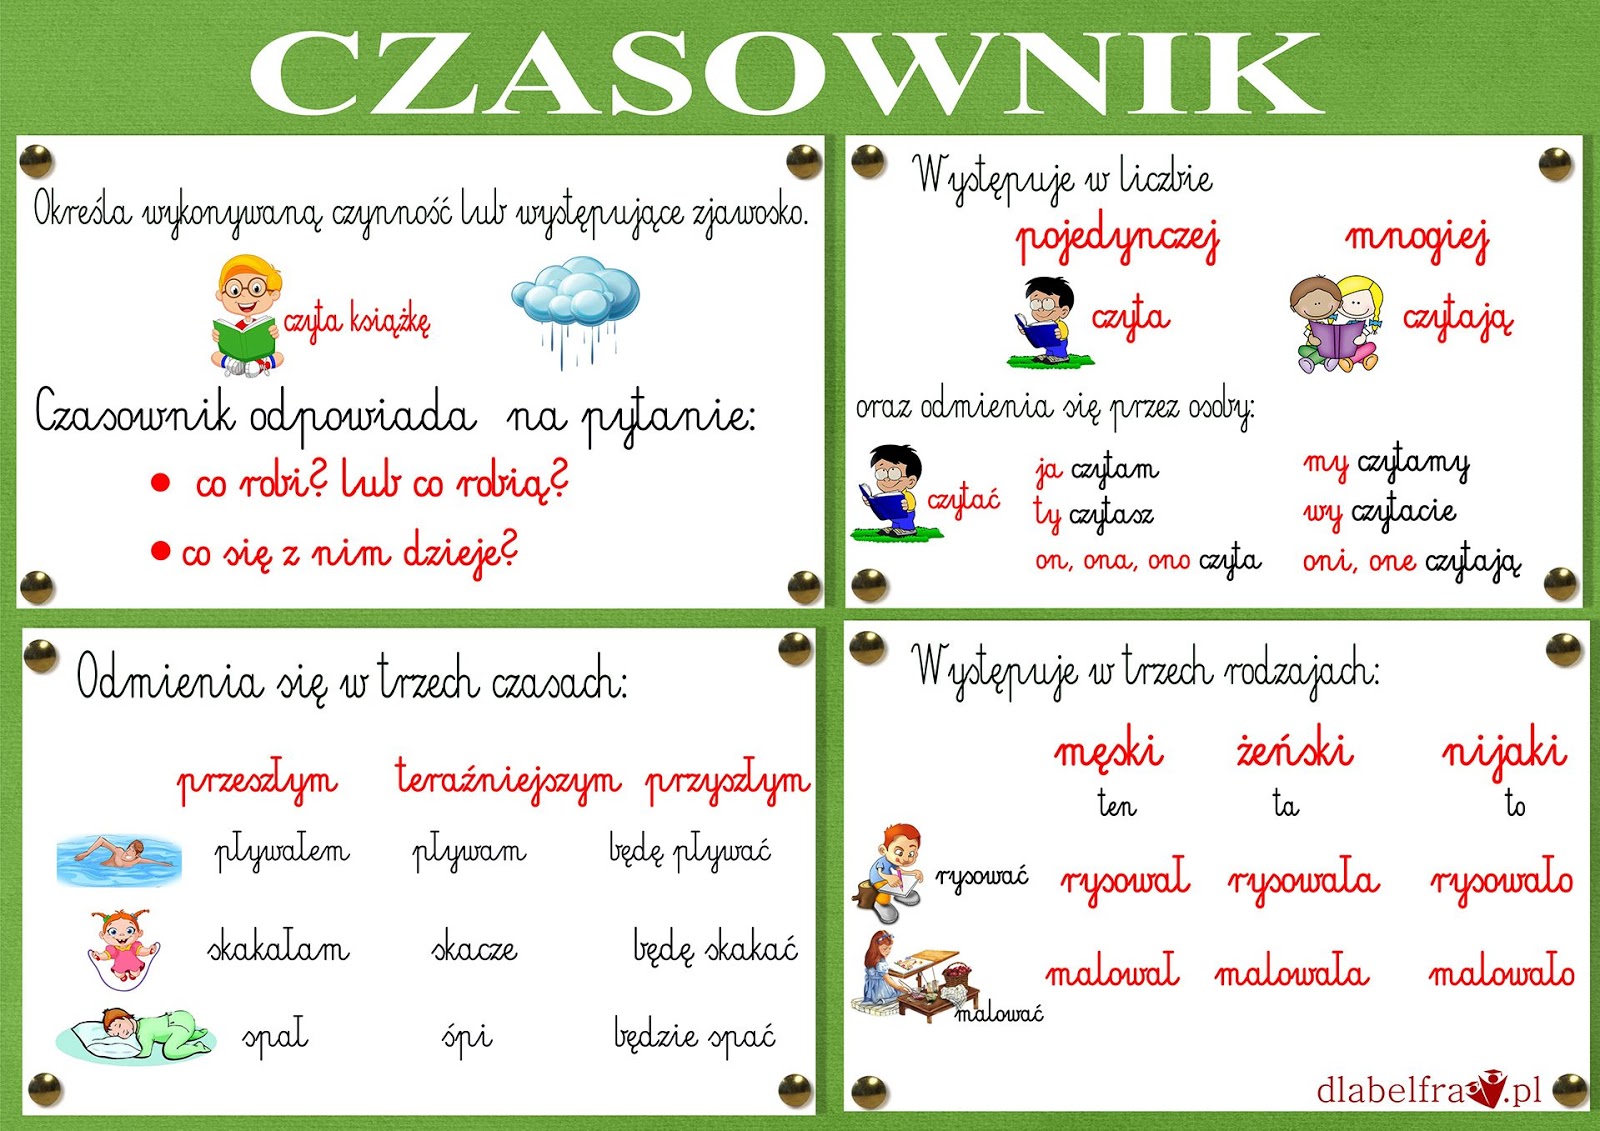 do your homework co to znaczy po polsku